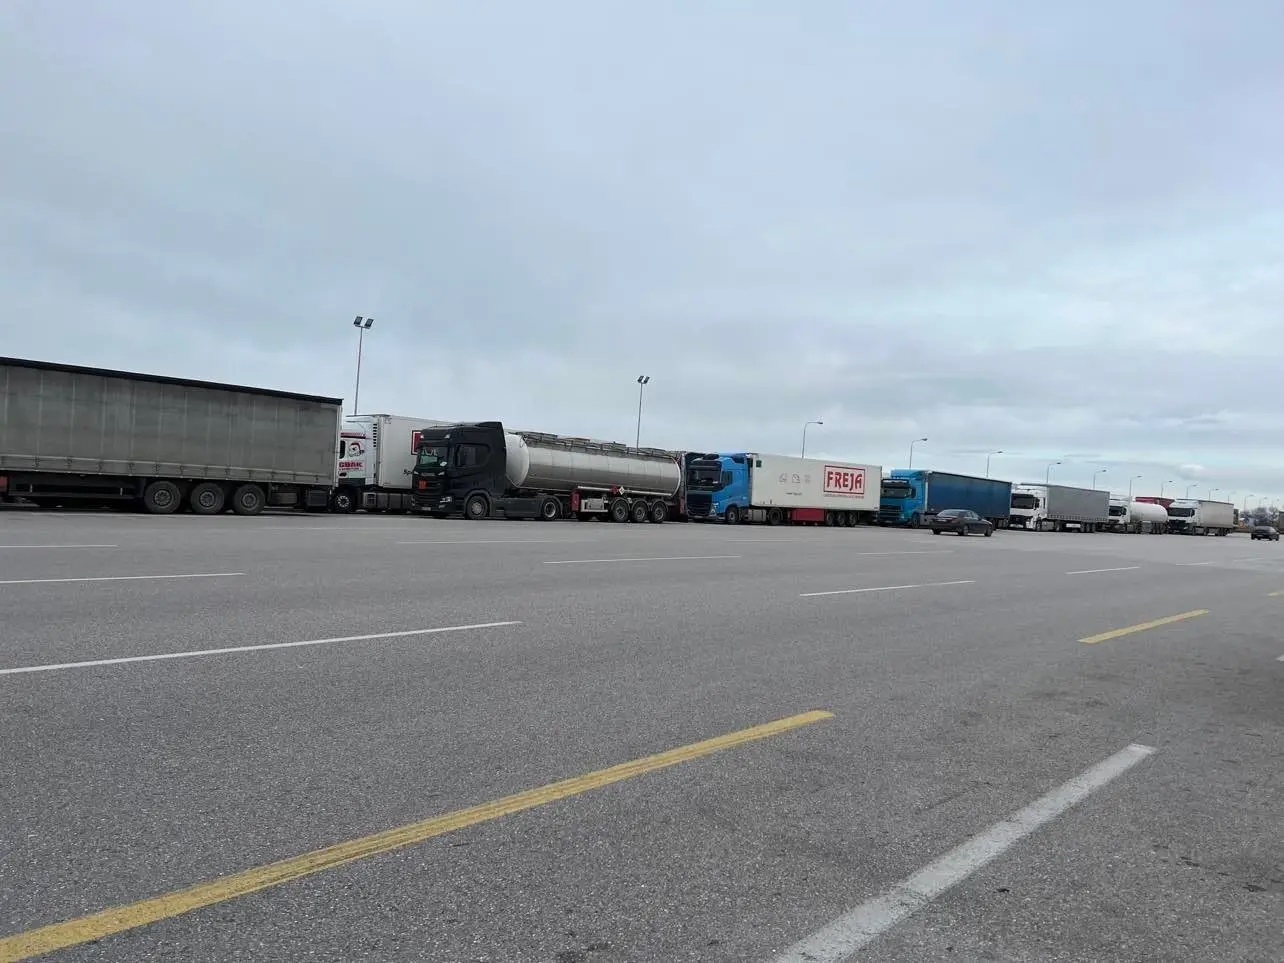 Κακοκαιρία «Μπάρμπαρα»: Ουρές χιλιομέτρων από φορτηγά στα διόδια των Μαλγάρων